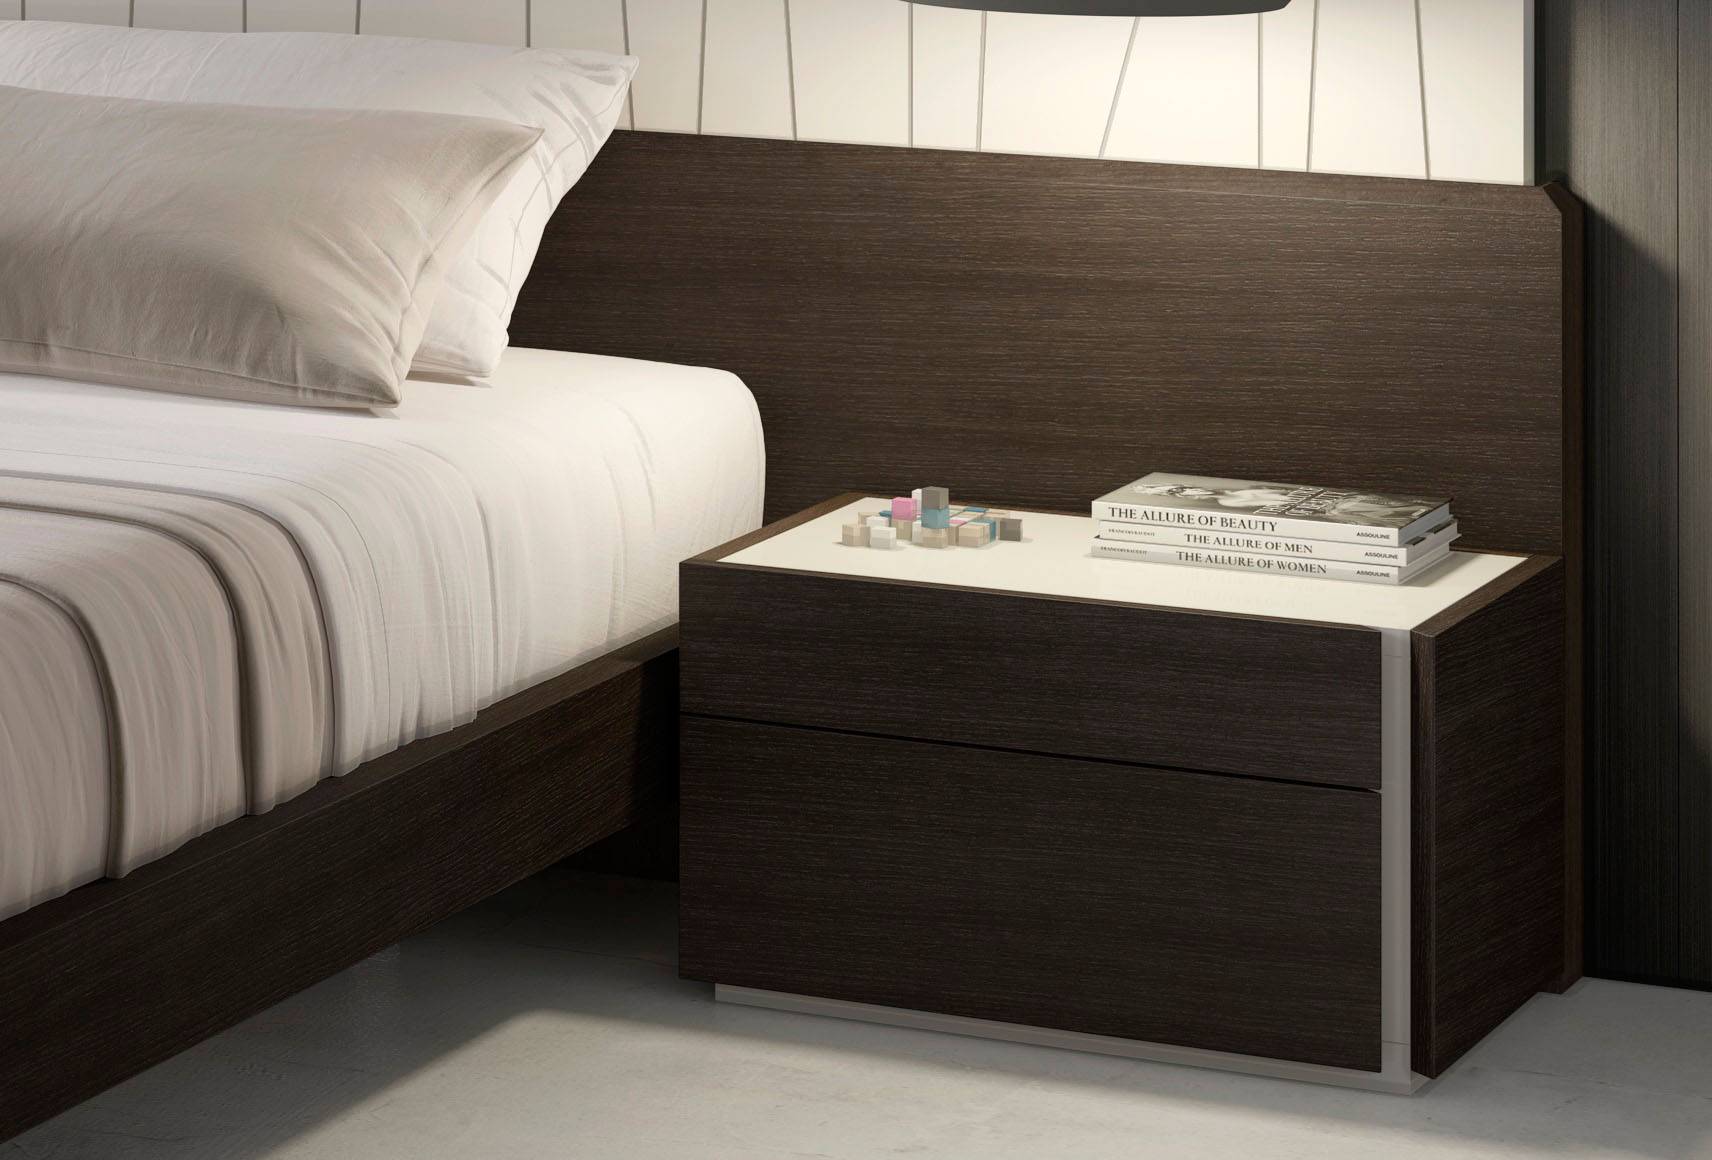 Graceful Wood Elite Design Furniture Set with Long Panels